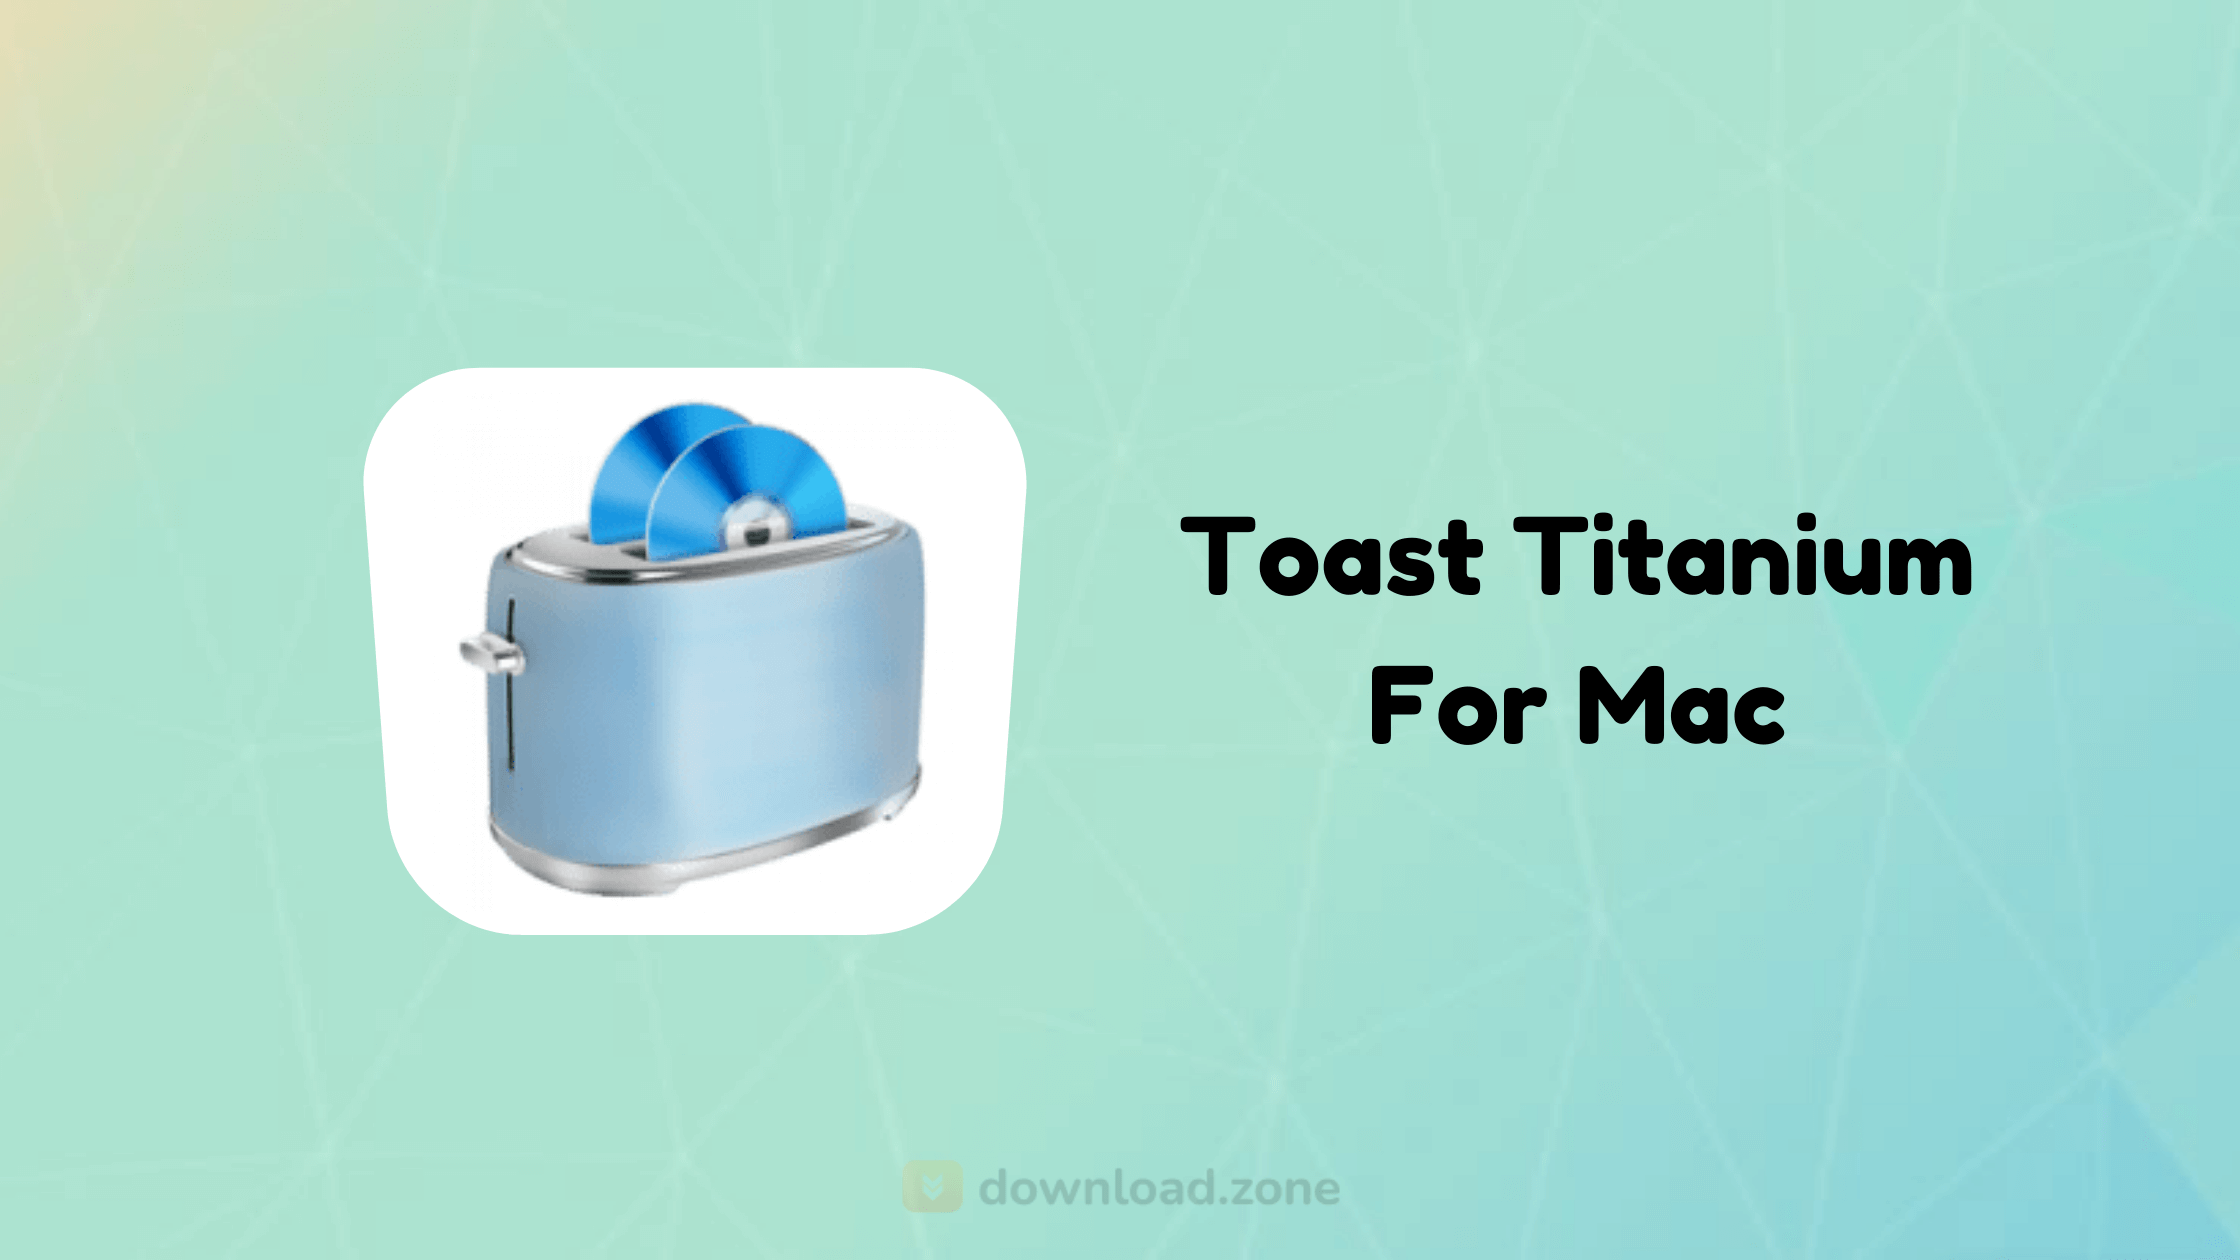 toast titanium 8 for mac free download